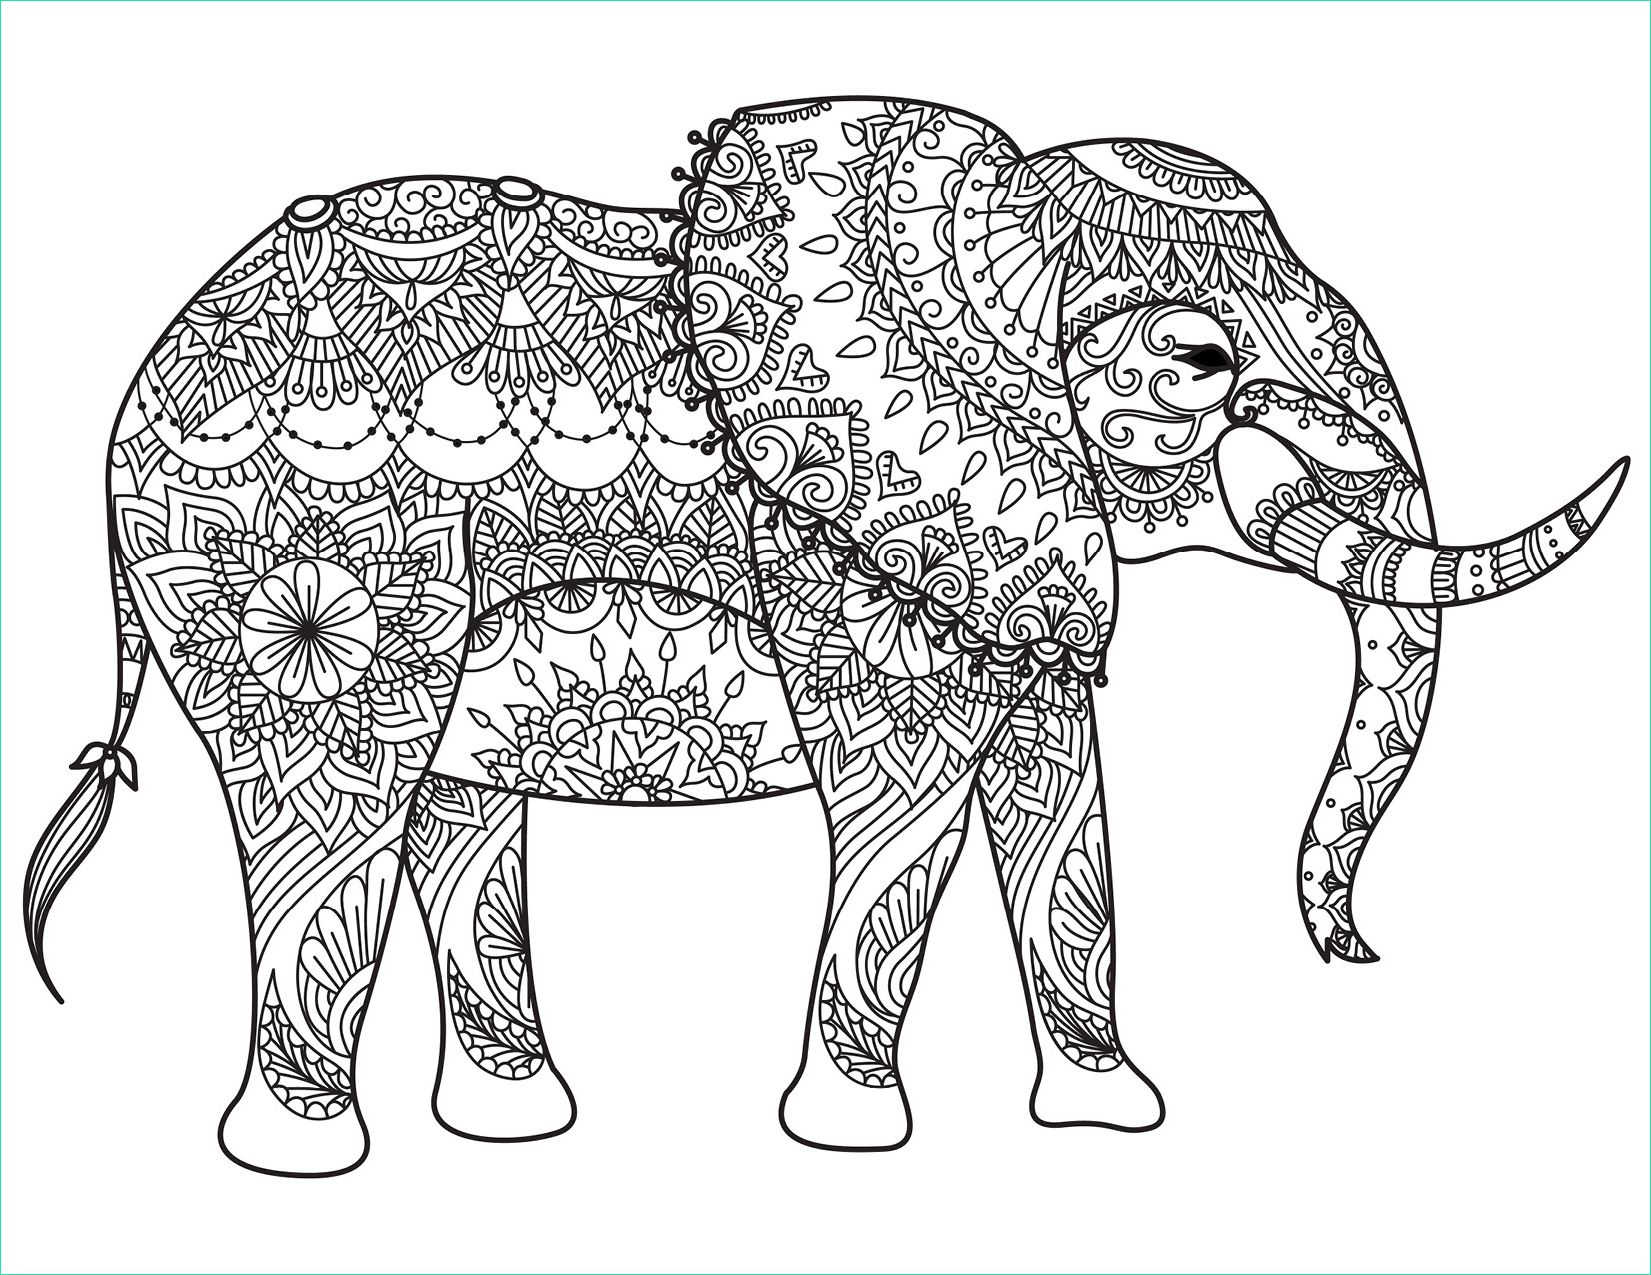 Dessin A Imprimer D&amp;#039;animaux Cool Collection Coloriage Animaux à Imprimer Pour Adulte Par Bimbimkha